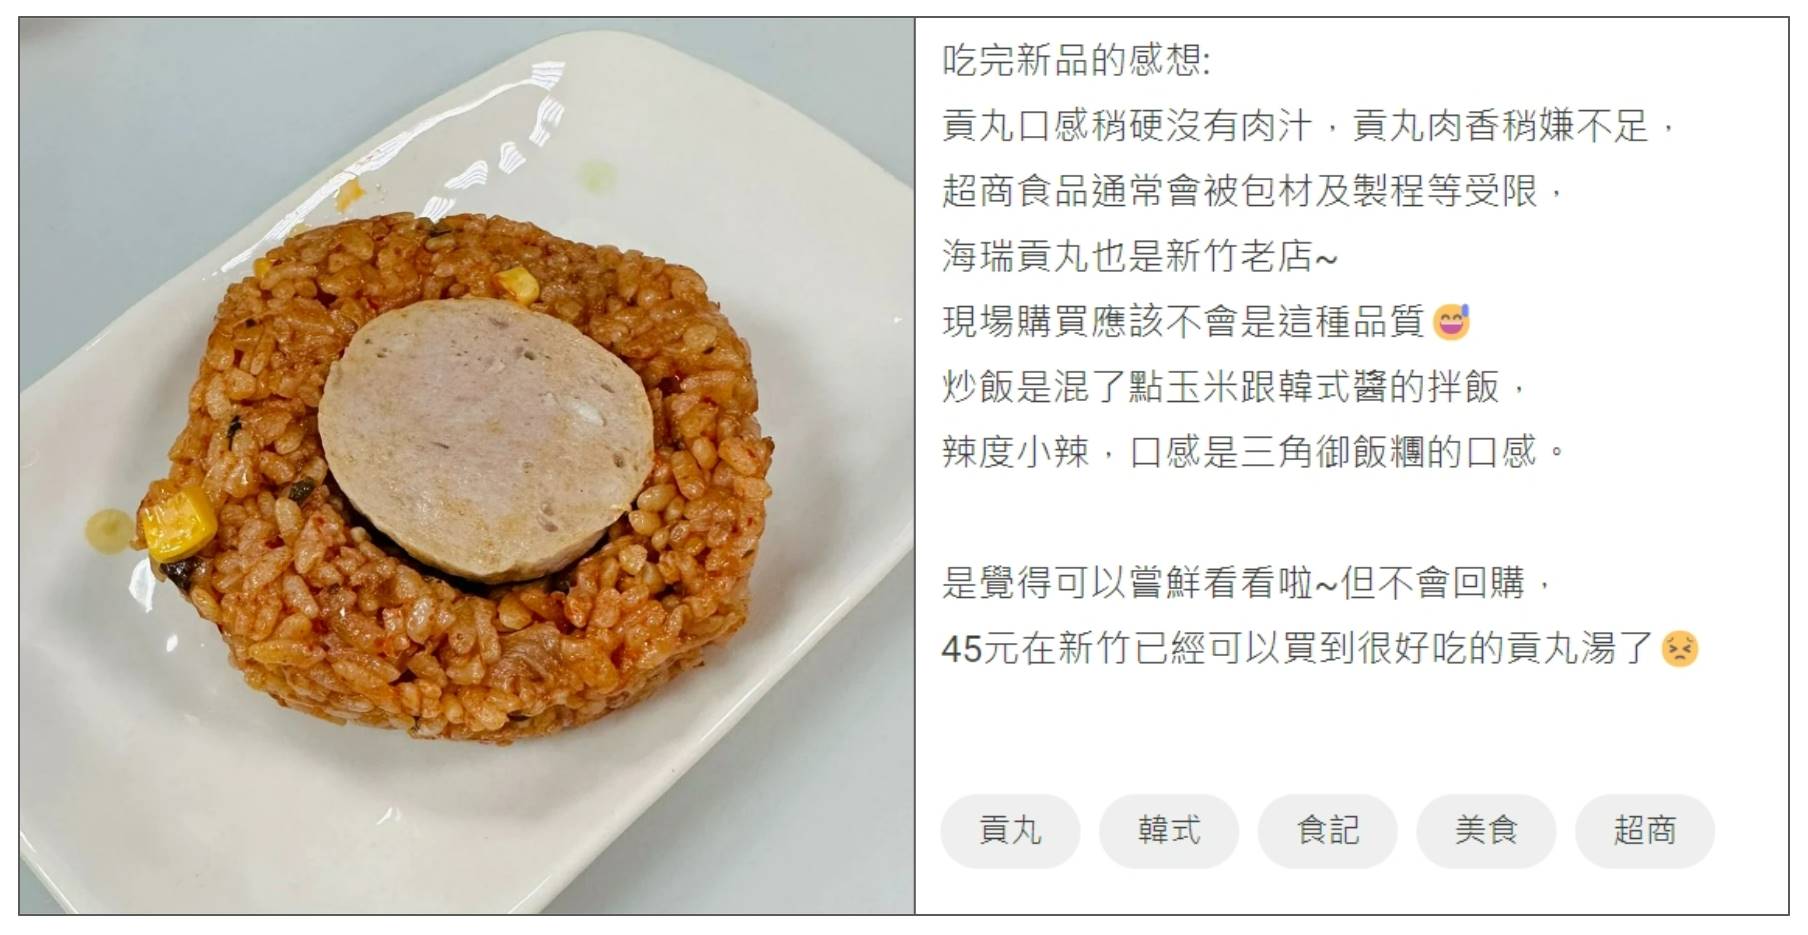 網友發文分享「海瑞摃丸韓式炒飯」飯糰的食後心得